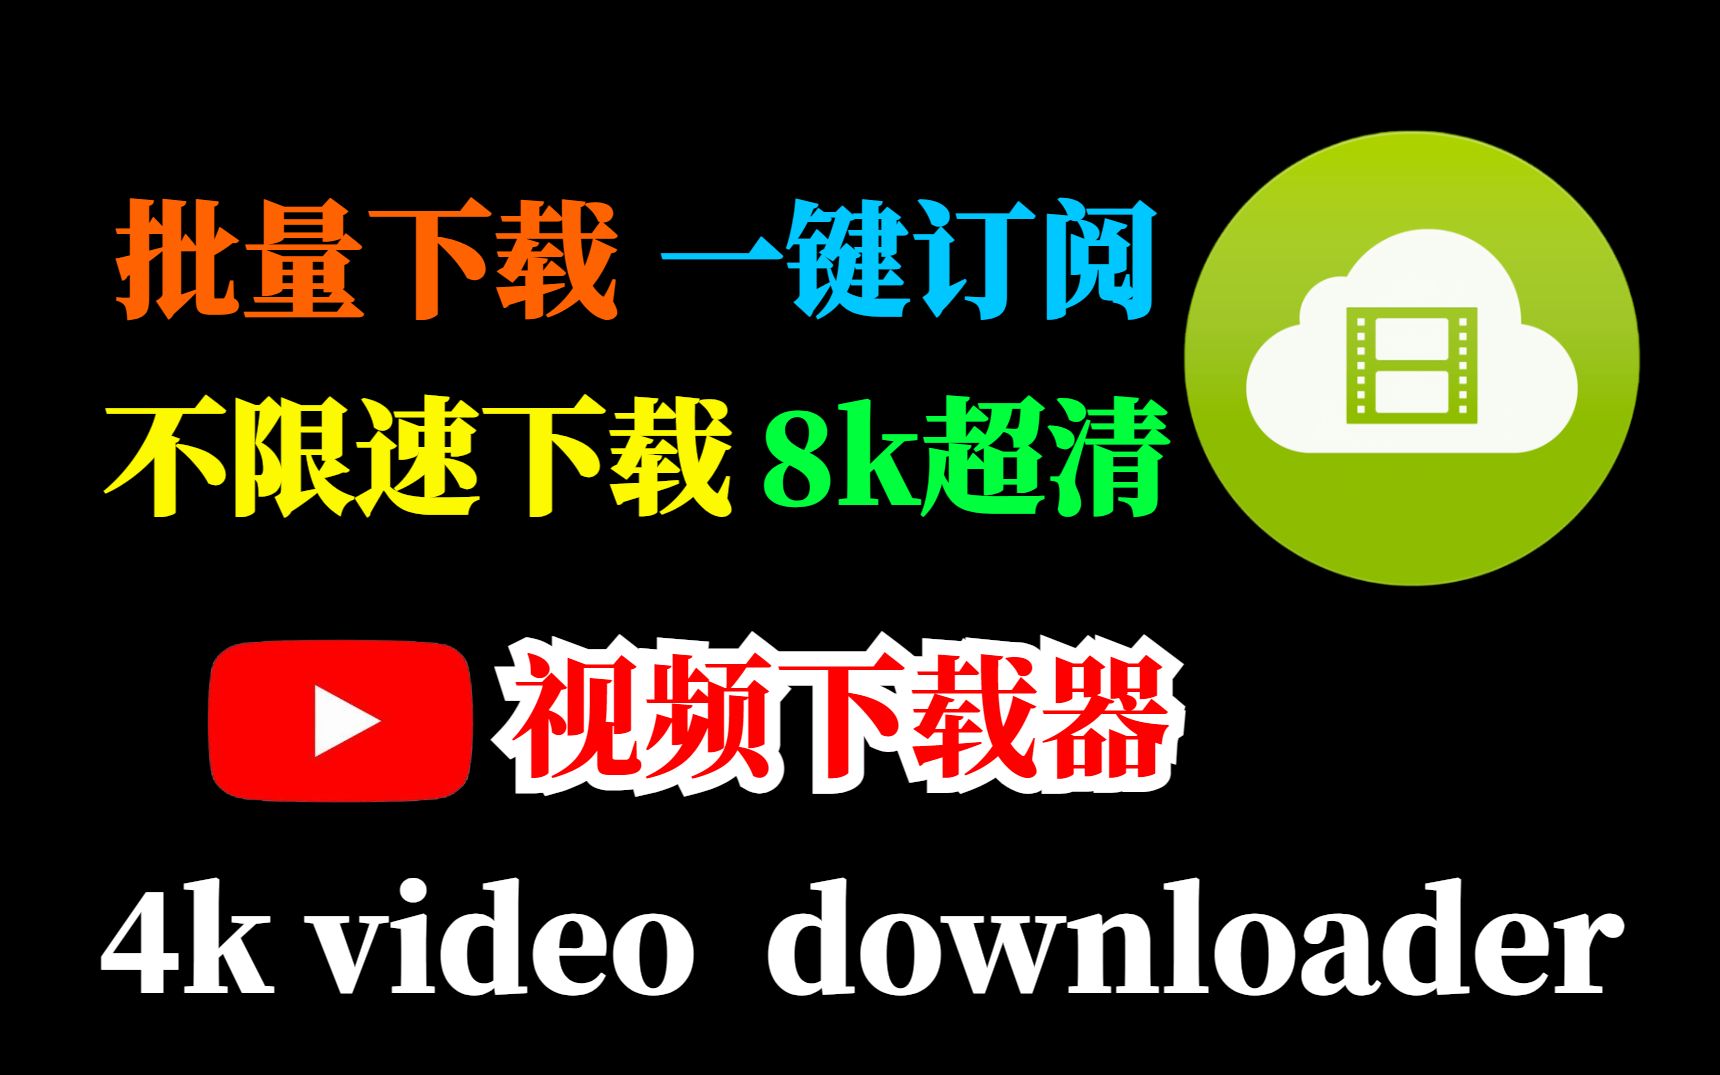 youtube视频下载器—4k video downloader